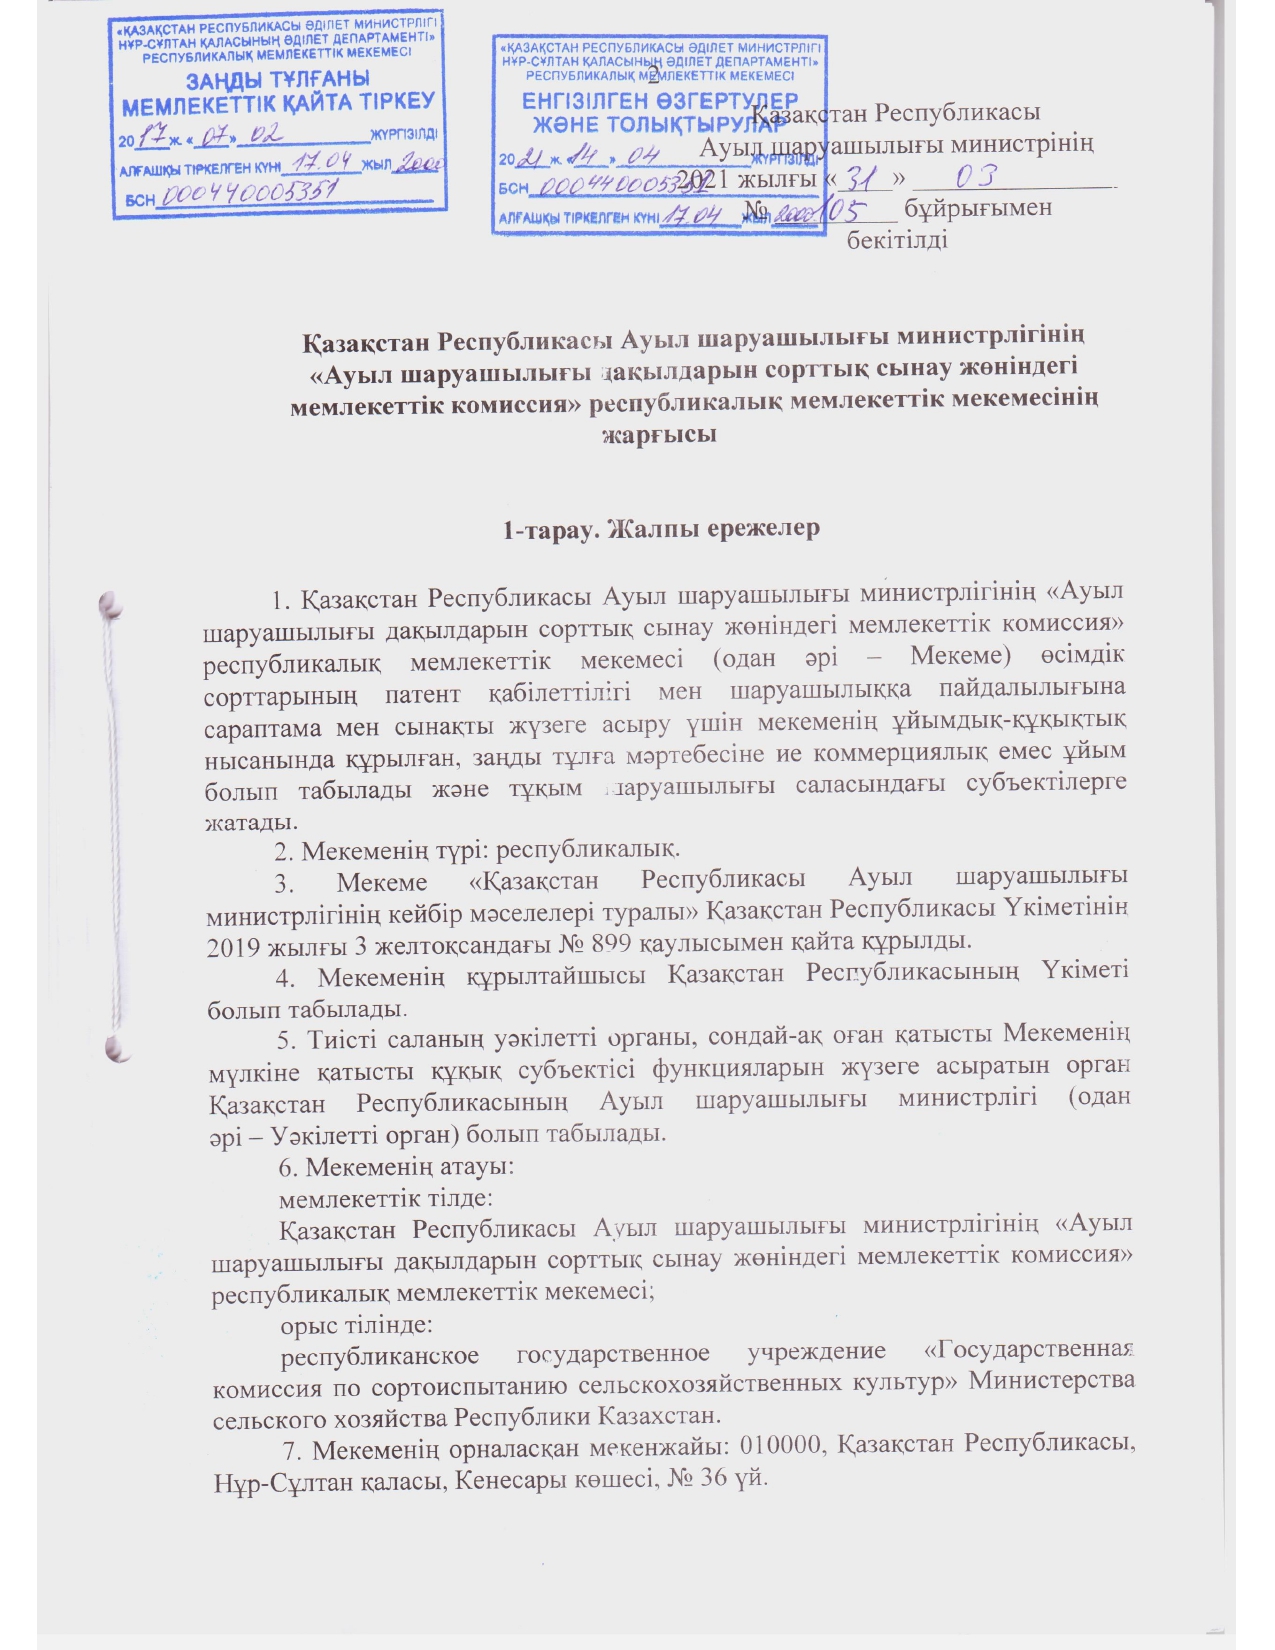 Устав ГосКомиссии_2021 год зарегистрирован_page-0001